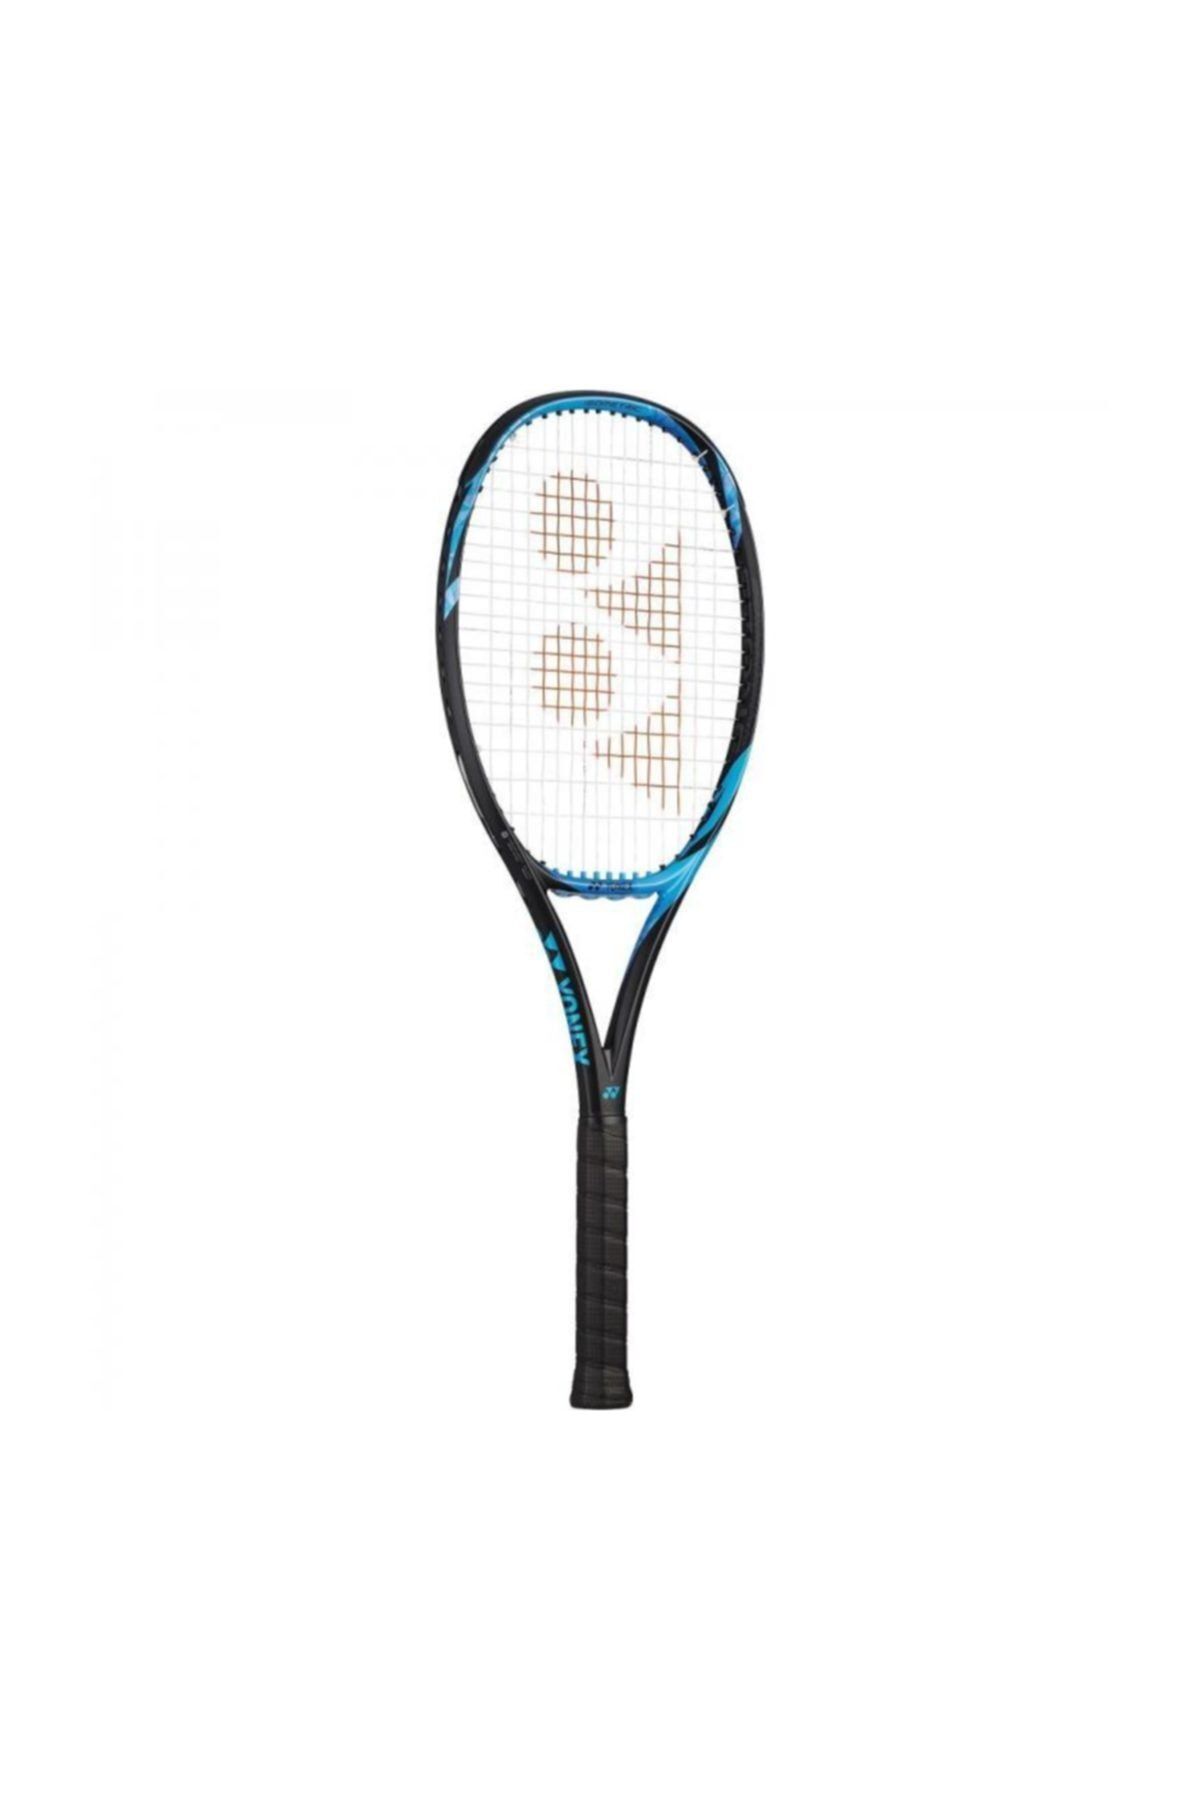 Yonex Unisex Spor Malzemeleri - Yeni Ezone 98 İnch-285Gr Tenis Raketi - Ezone98M (Kordajsızdır)